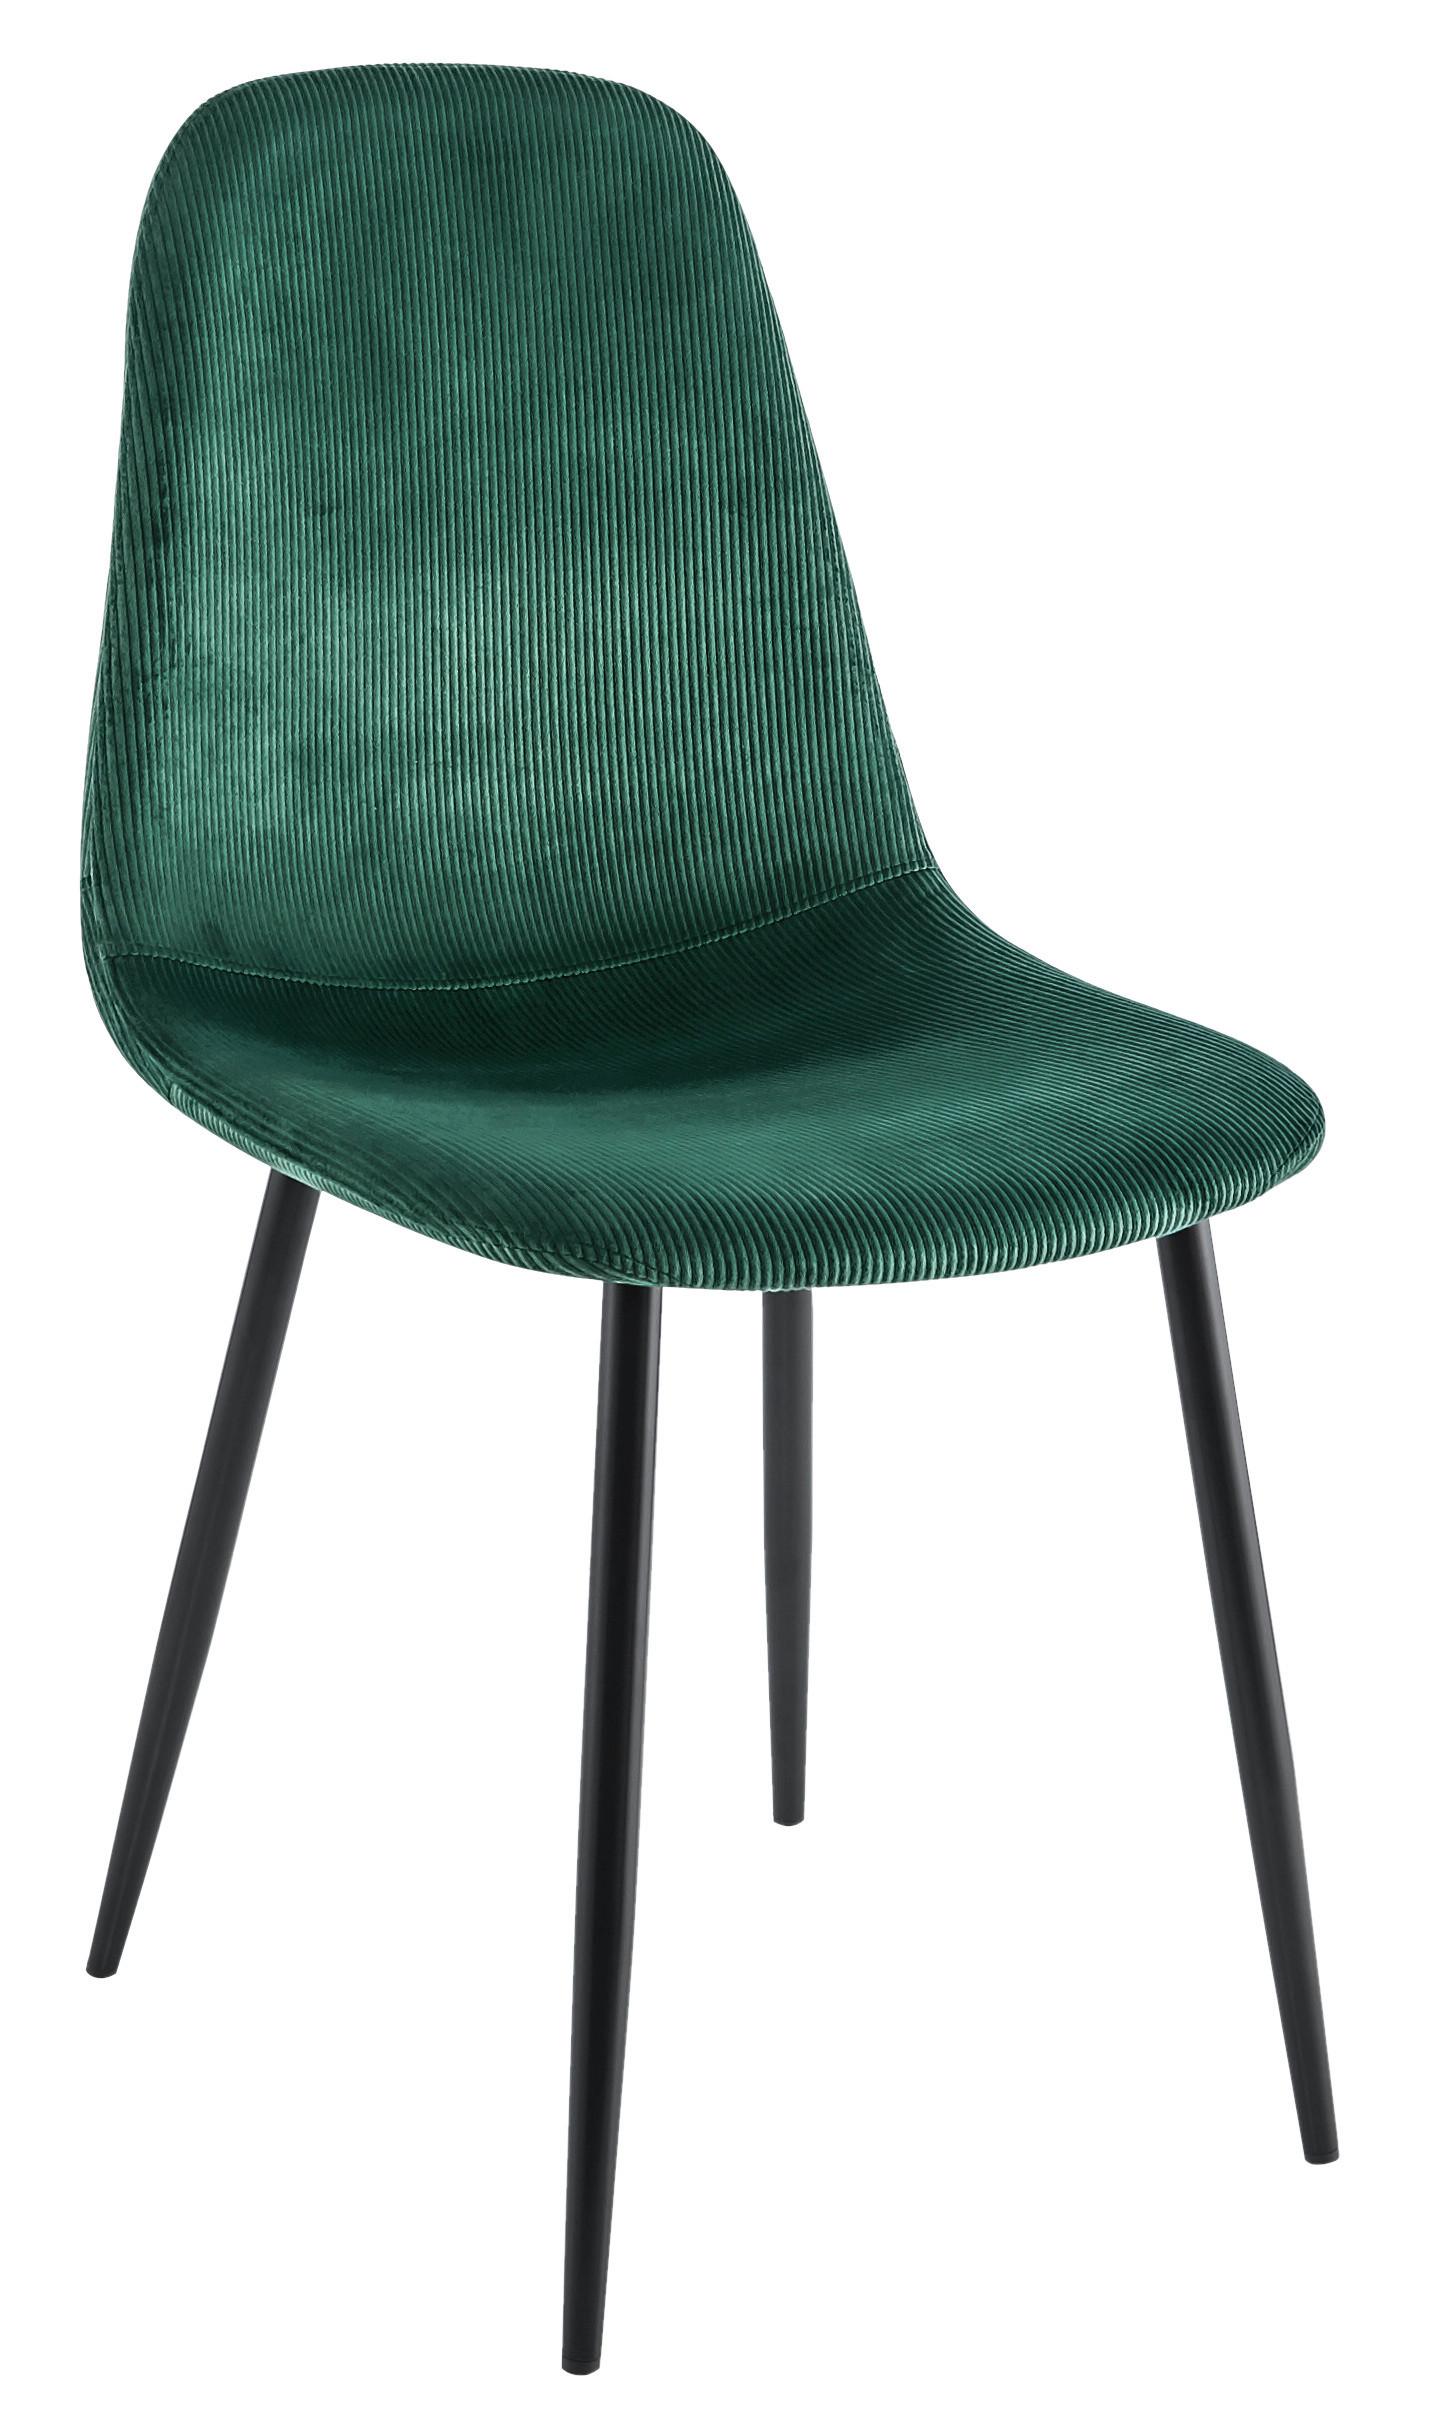 Jídelní Židle Cordula, Zelená - černá/zelená, Moderní, kov/textil (44,5/86,5/54cm) - Modern Living